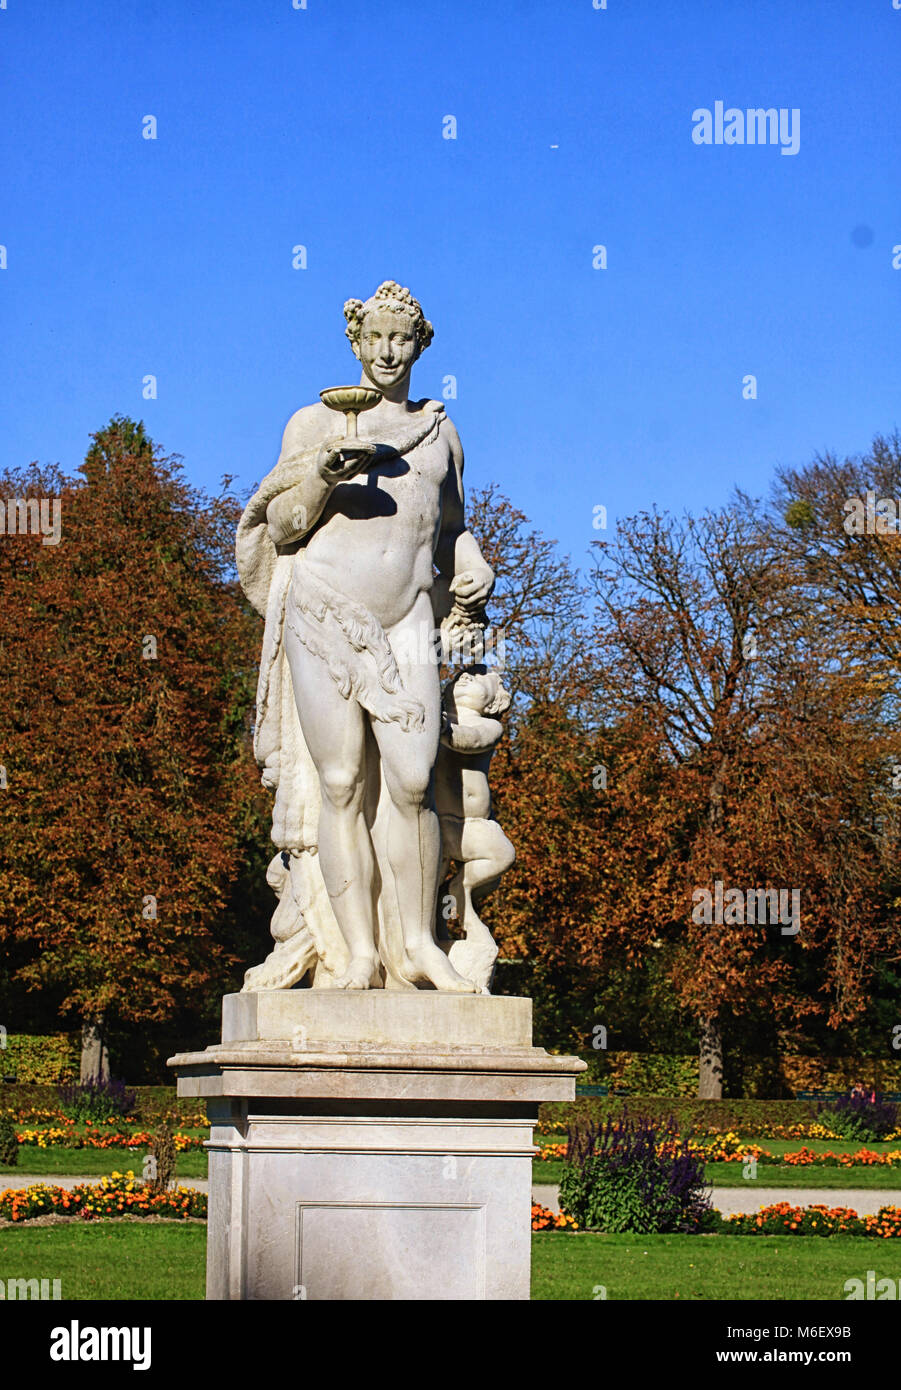 MUNICH, ALLEMAGNE - Nymphemburg palace gardens : statue mythologique romain du dieu du vin Bacchus avec satyre et calice, par Anton Roman Boos, l'année 1782 Banque D'Images